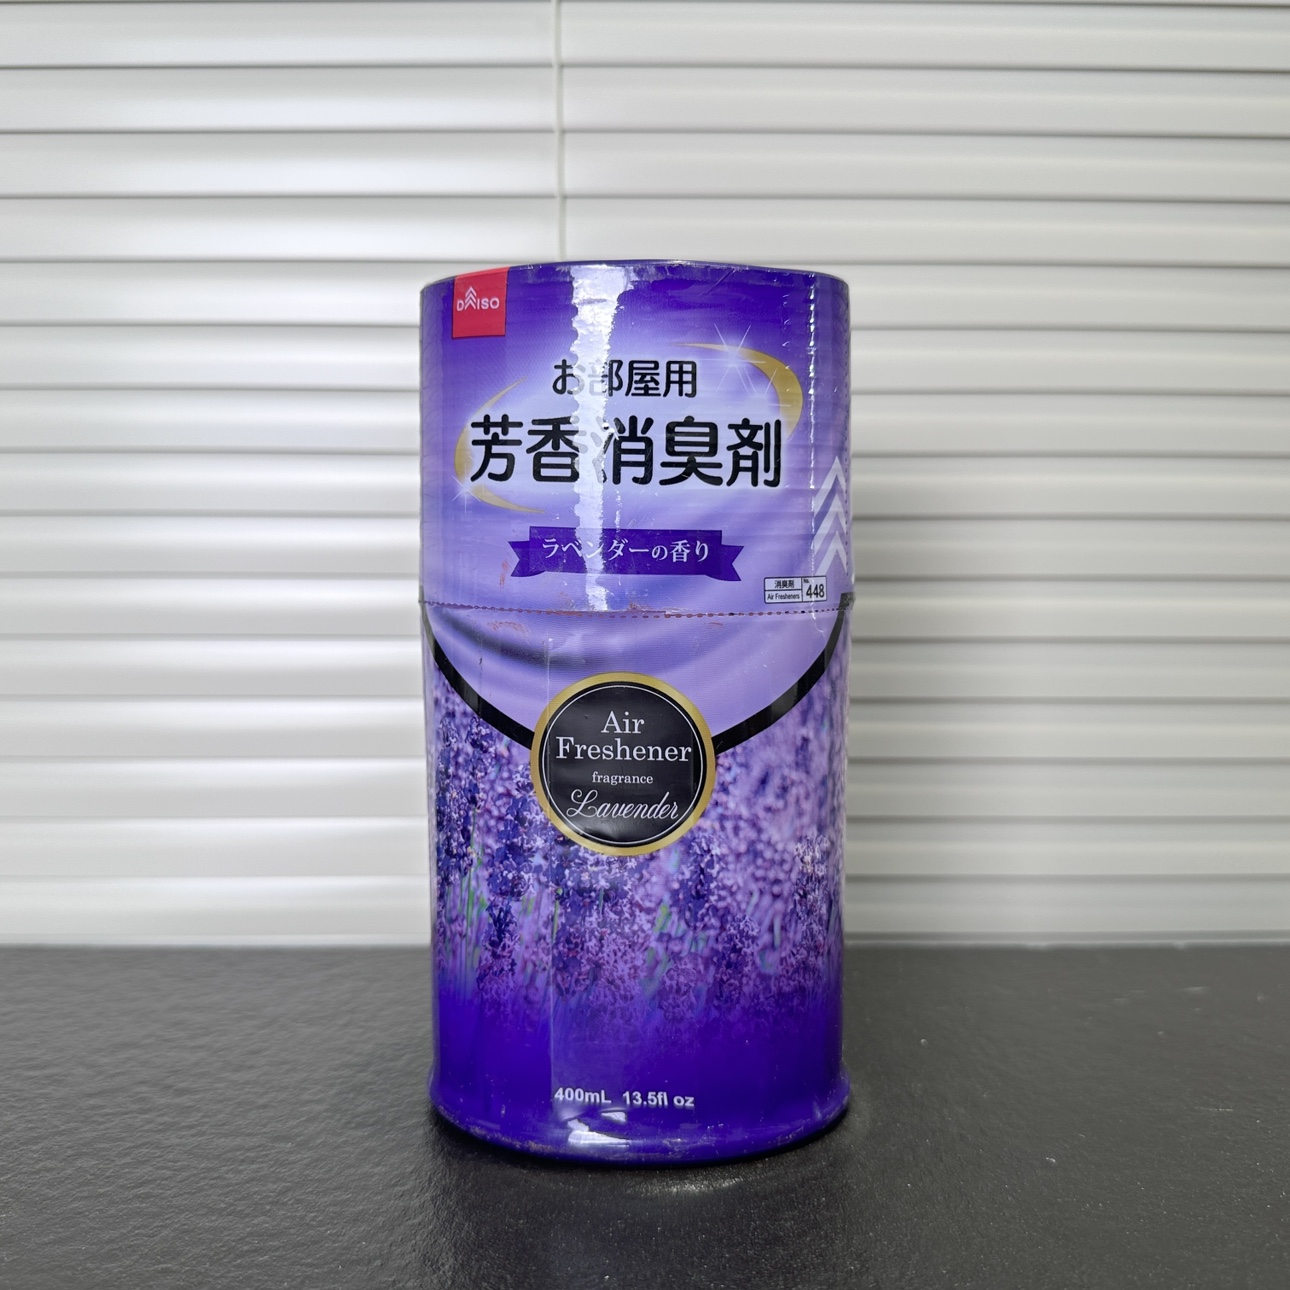 臭味消失术|日本芳香消臭剂室用厕用薰衣草空气清新剂除臭神器